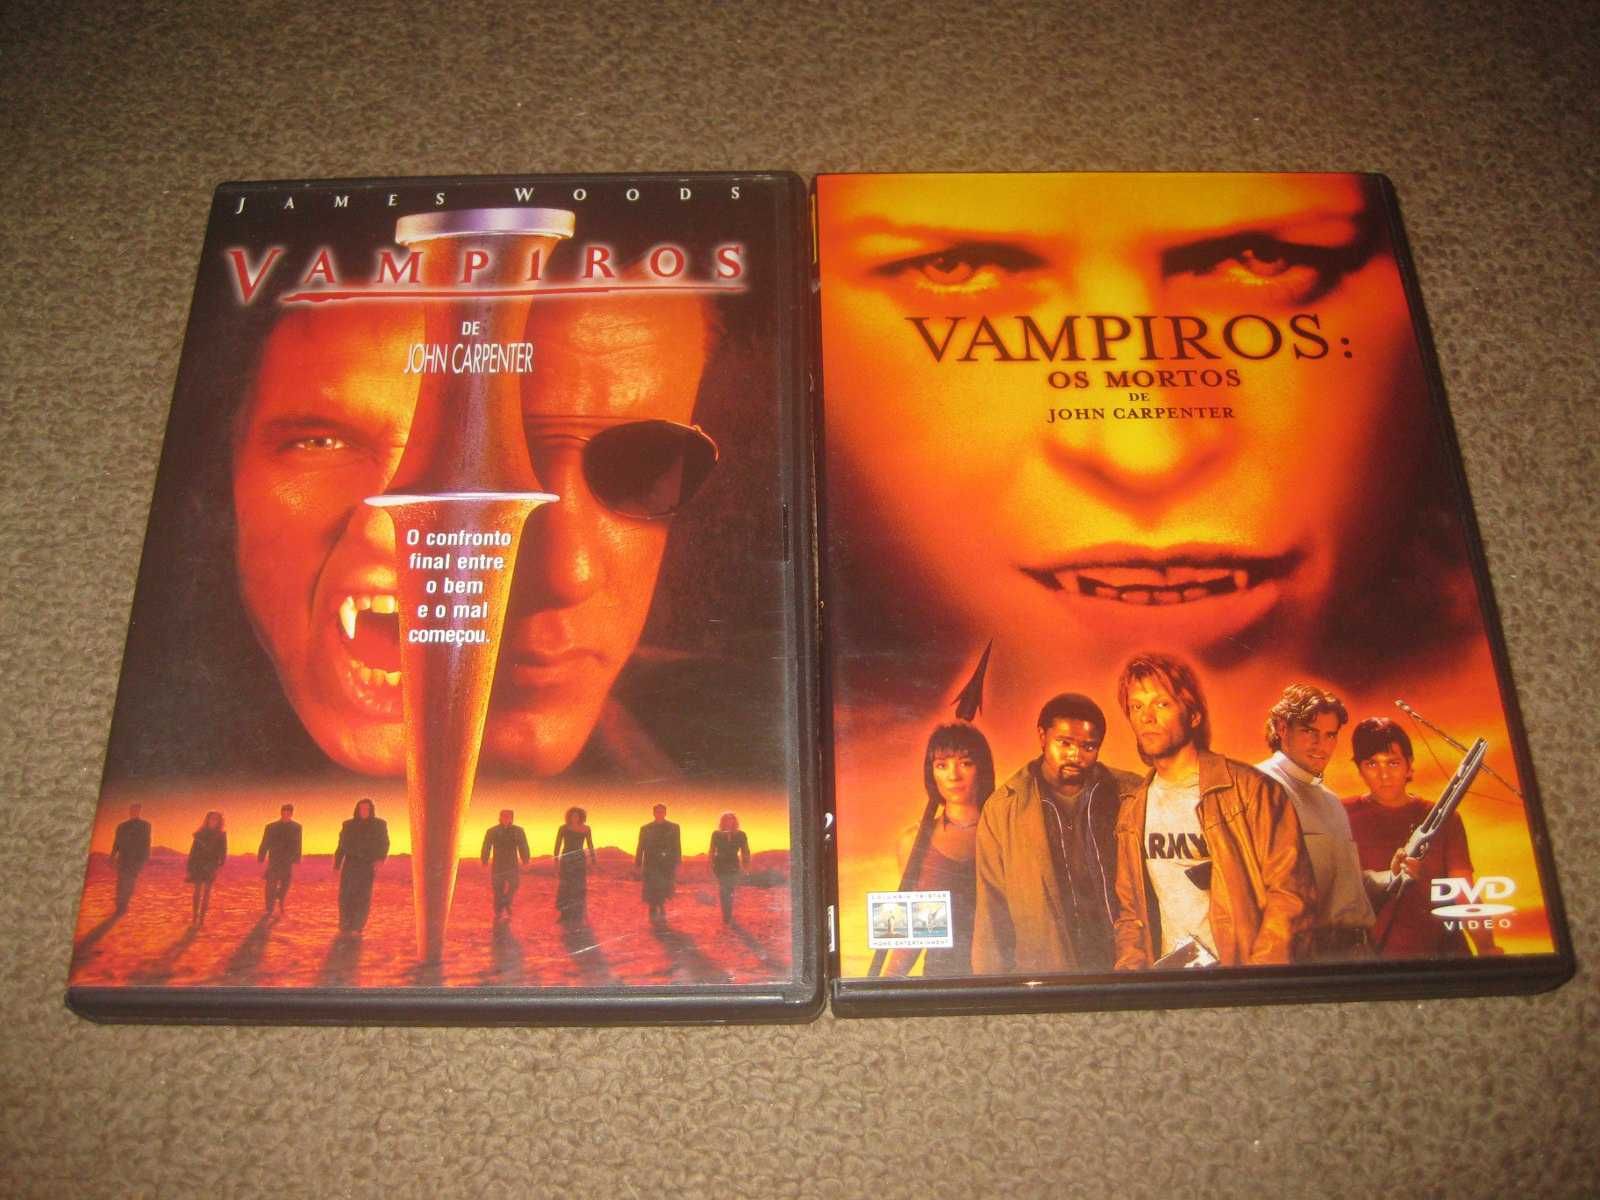 Colecção em DVD "Vampiros" de John Carpenter